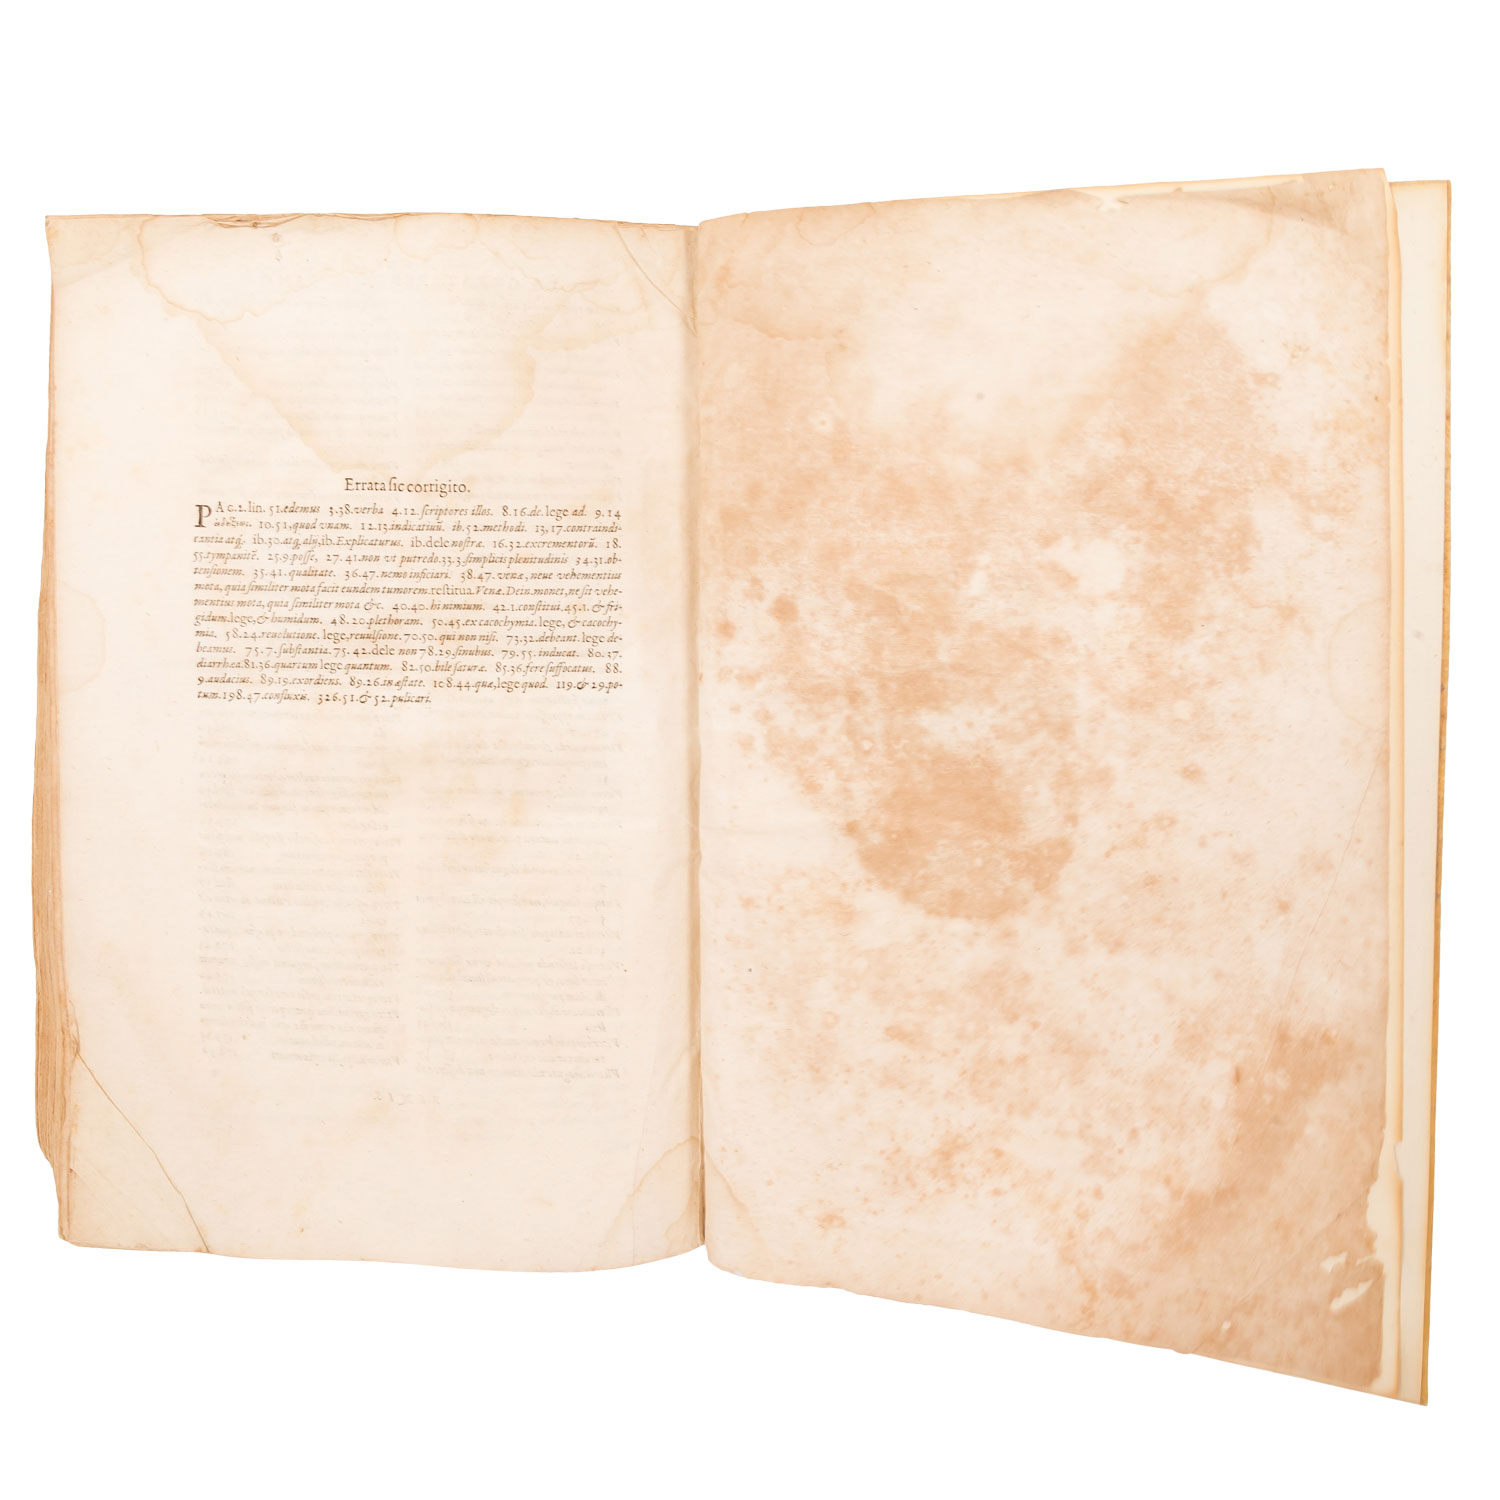 ORAZIO AUGENIO "De ratione curandi per sanguinis missionem libri decem" 1598 - Image 5 of 6